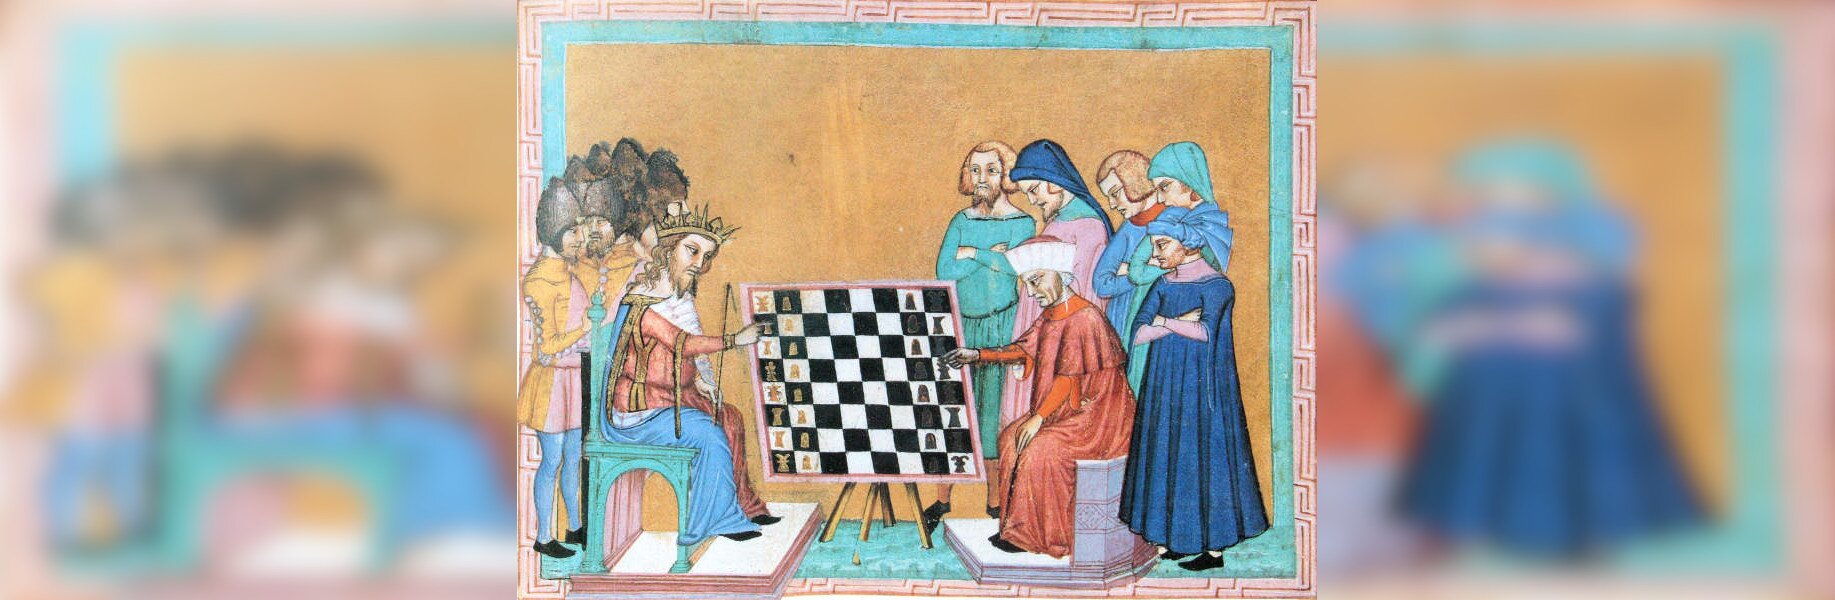 Obraz przedstawia grę w szachy. Przy szachownicy siedzi po lewej stronie król w koronie, po prawej stronie starzec w długiej szacie. Za królem stoi grupa żołnierzy, za starcem pięciu mężczyzn w długich szatach. Wszyscy przyglądają się grze.